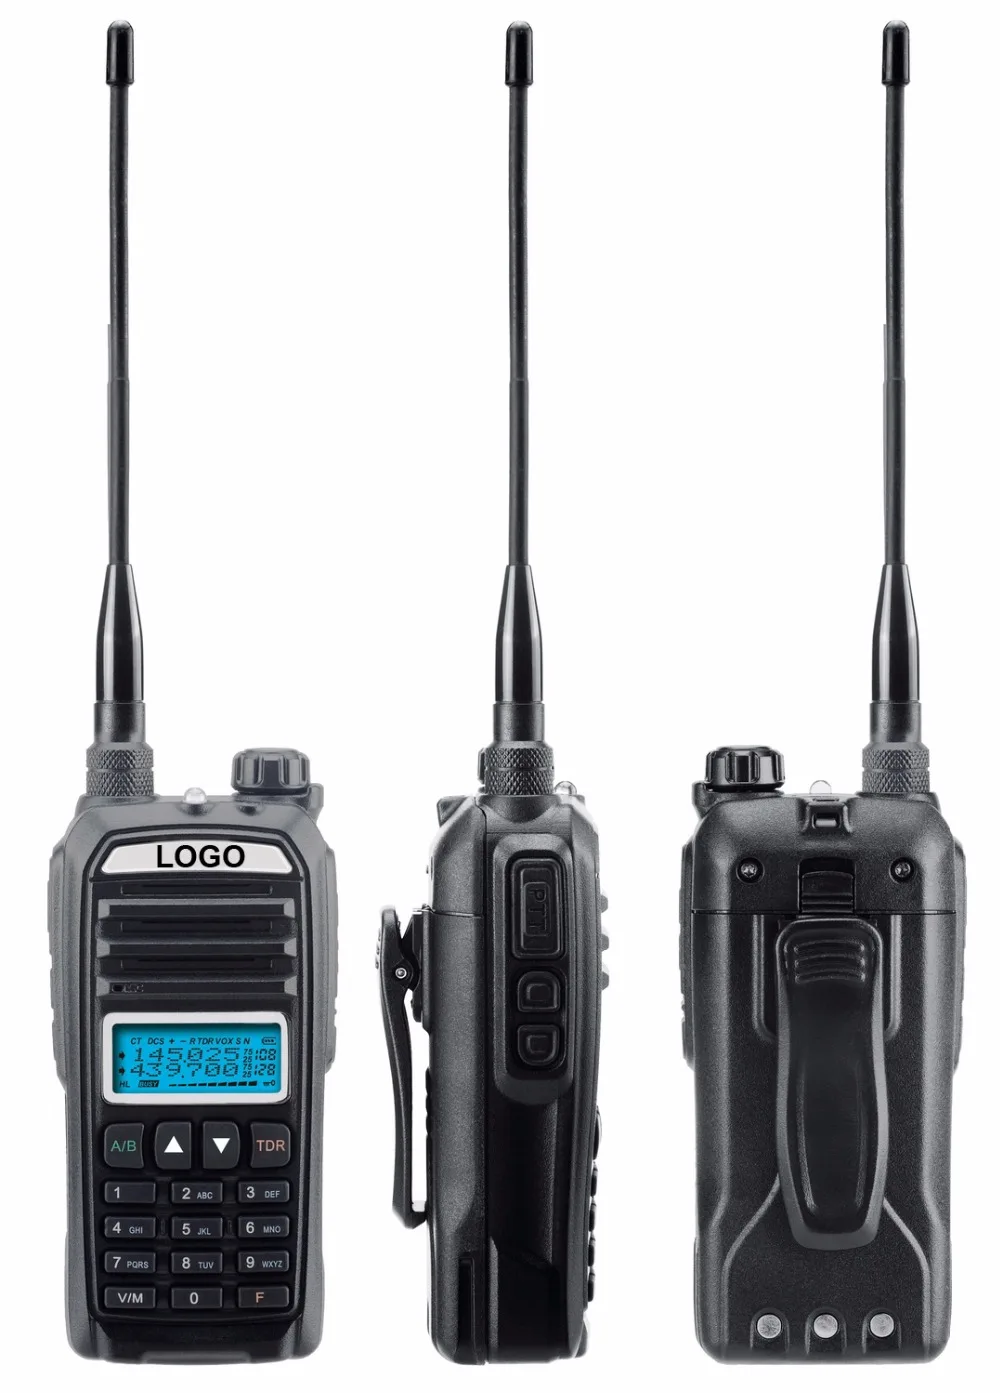 2шт KEWOD TH-F9 8 Вт Высокомощное Двухдиапазонное Двустороннее Радио с аккумулятором 3000 мАч и Автомобильным зарядным устройством UHF VHF Long range Walkie Talkie 0